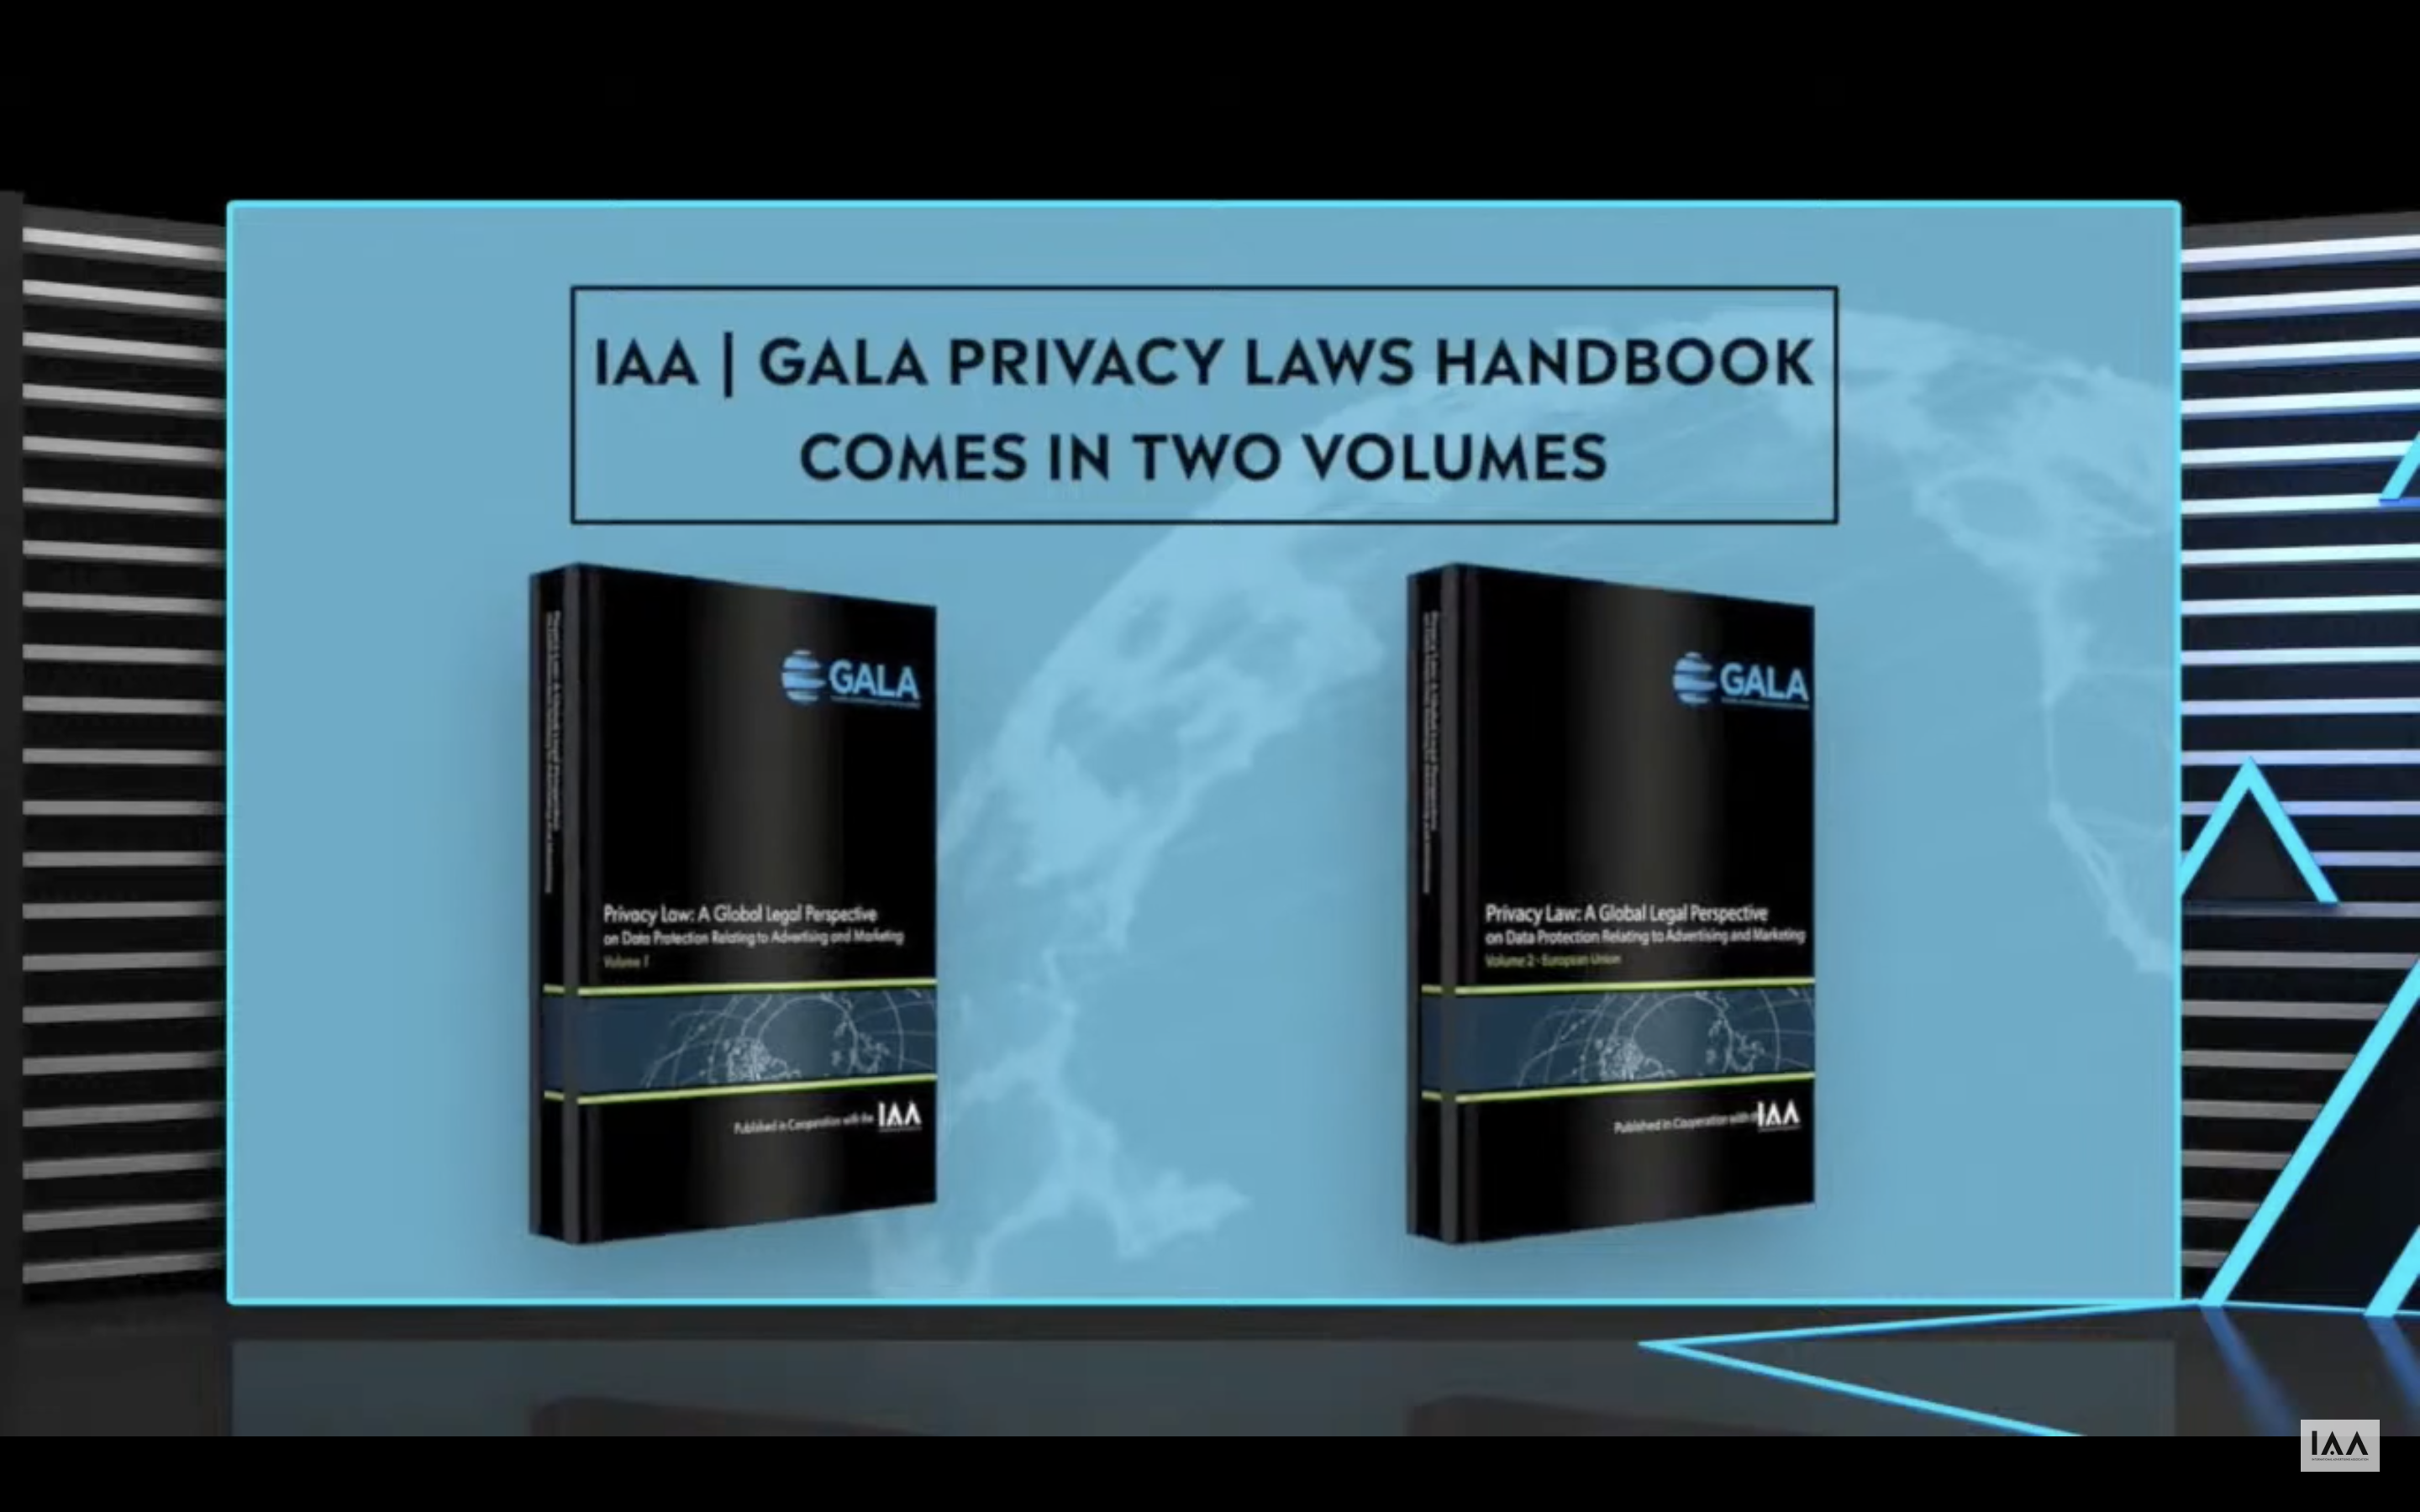 IAA & GALA launch Global Privacy Laws Handbook